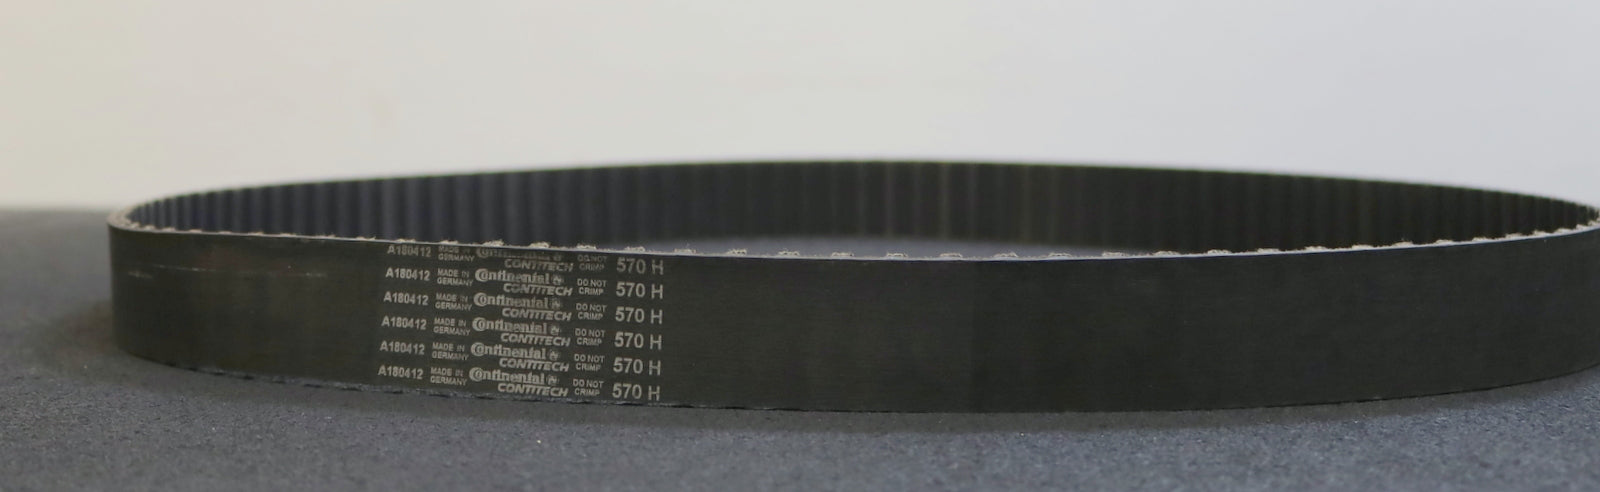 CONTITECH Zahnriemen Timing belt 570H Länge 1447,8mm Breite 35,6mm - unbenutzt